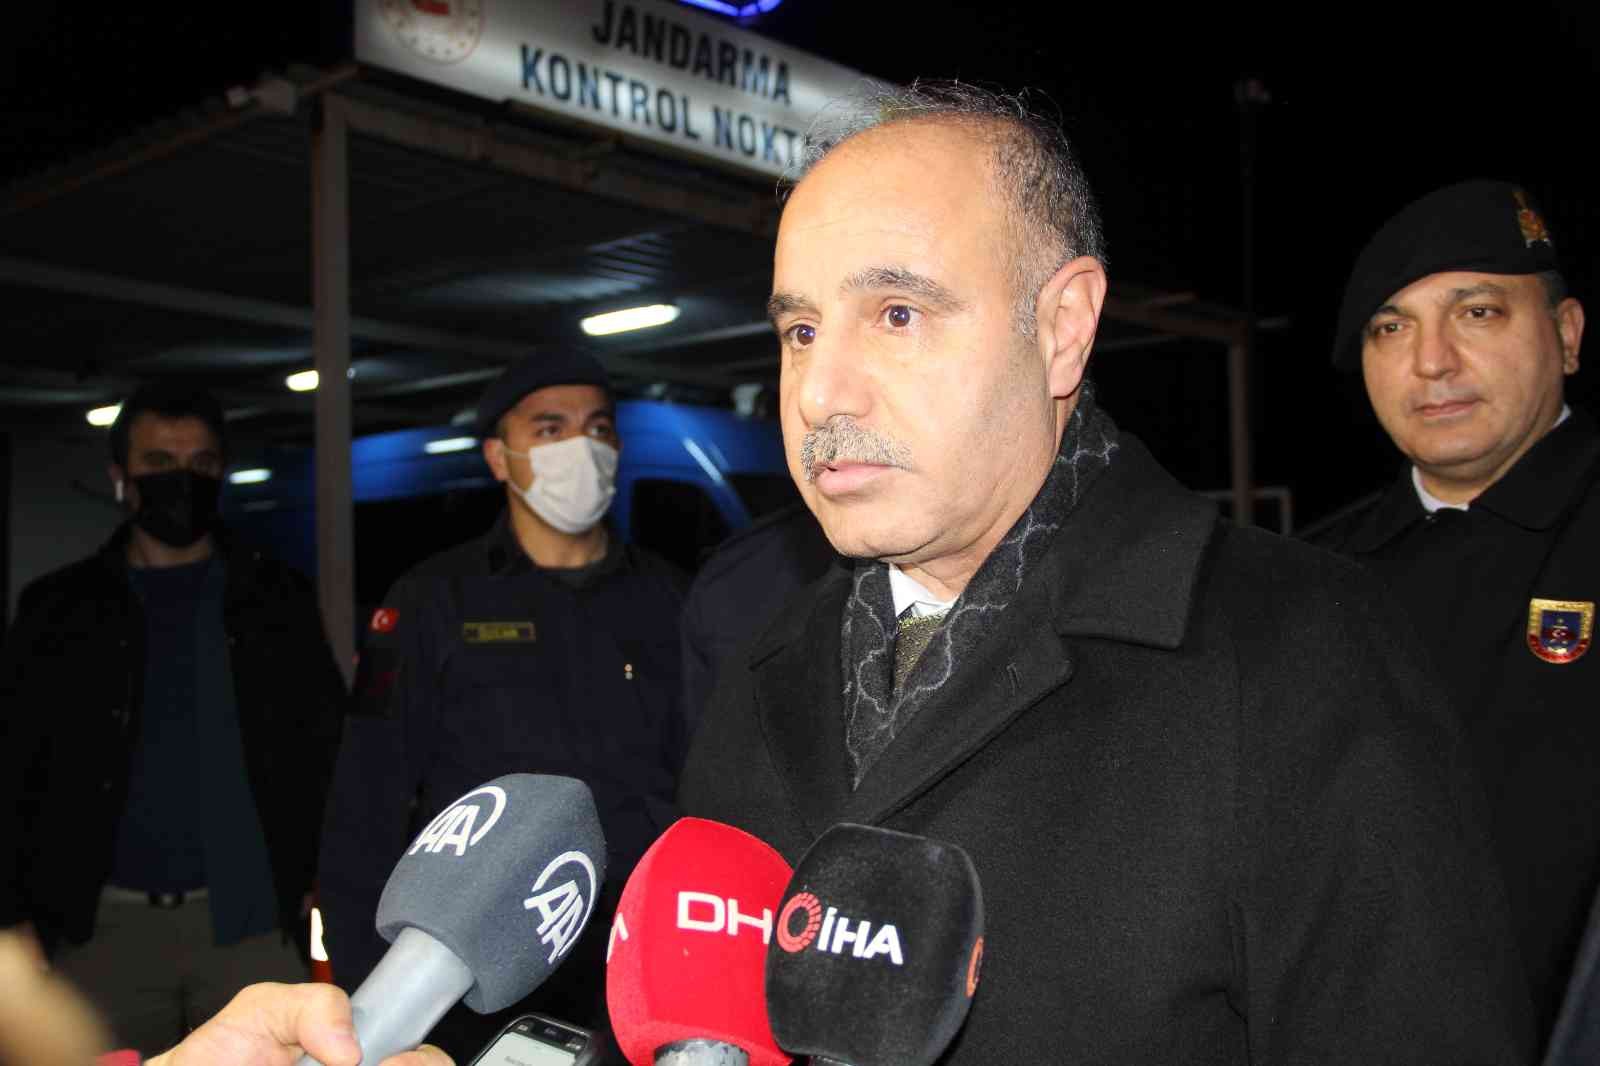 Emniyet Genel Müdürü Aktaş: “265 bin personelle 81 ilde sahadayız” #izmir